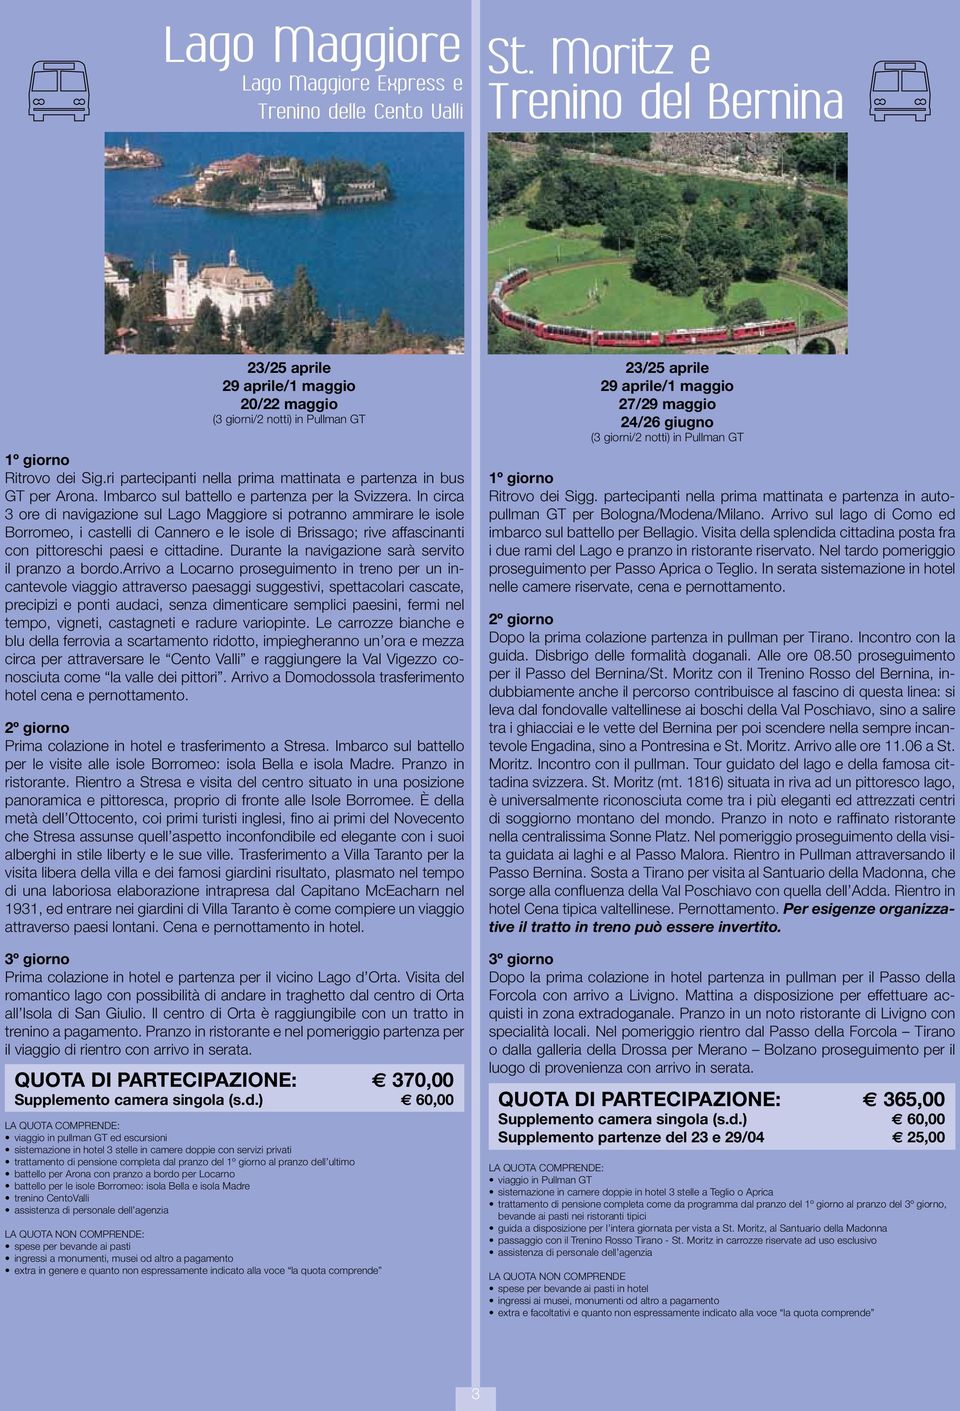 In circa 3 ore di navigazione sul Lago Maggiore si potranno ammirare le isole Borromeo, i castelli di Cannero e le isole di Brissago; rive affascinanti con pittoreschi paesi e cittadine.